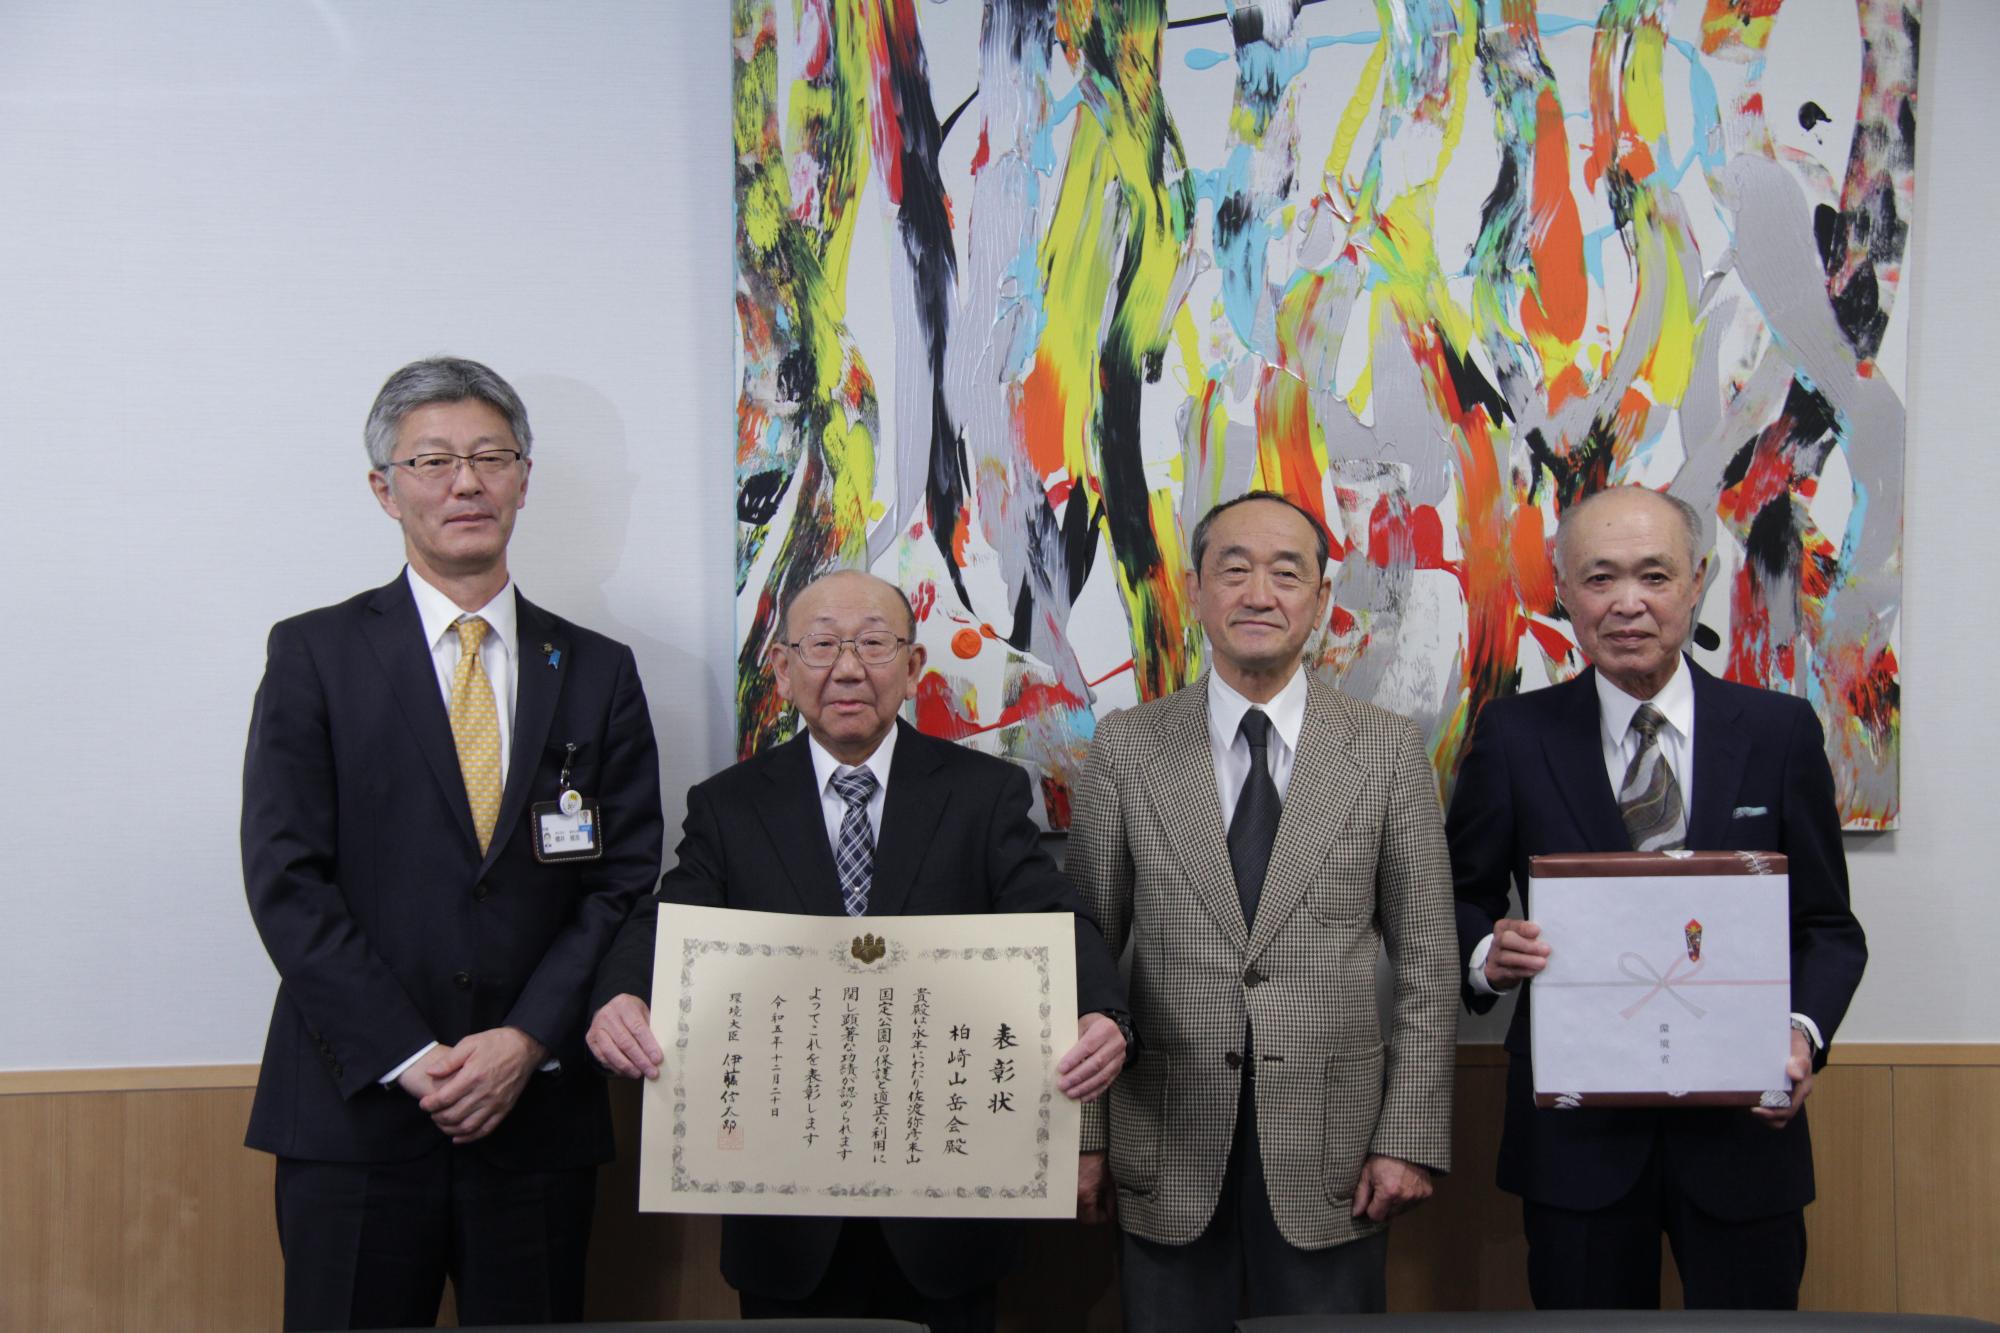 写真：表彰状と副賞を持った柏崎山岳会役員3名と市長との記念撮影。右から、柏崎山岳会の内山幹事、金子幹事、廣井会長、櫻井市長です。